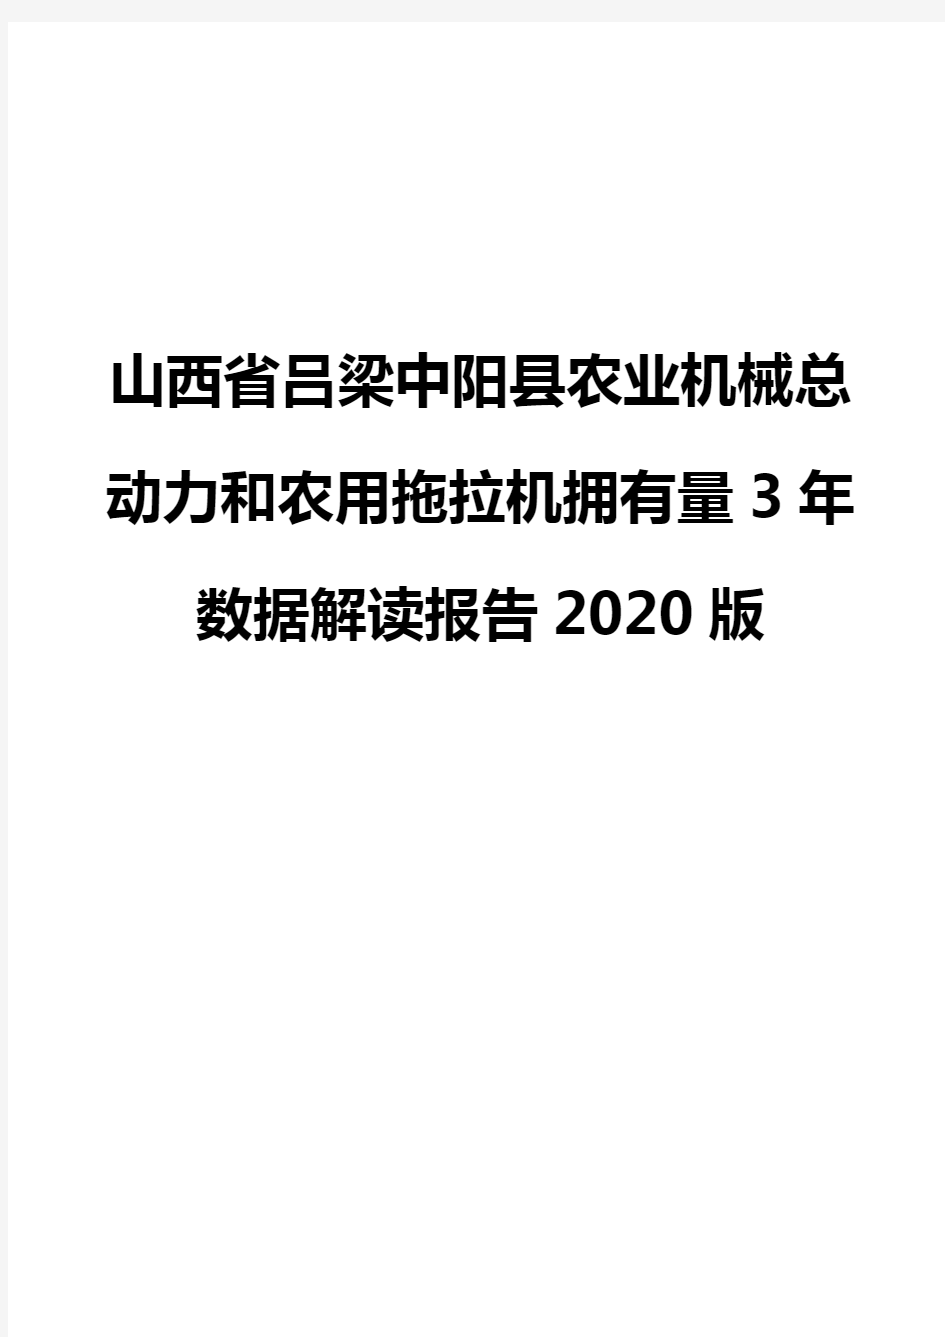 山西省吕梁中阳县农业机械总动力和农用拖拉机拥有量3年数据解读报告2020版